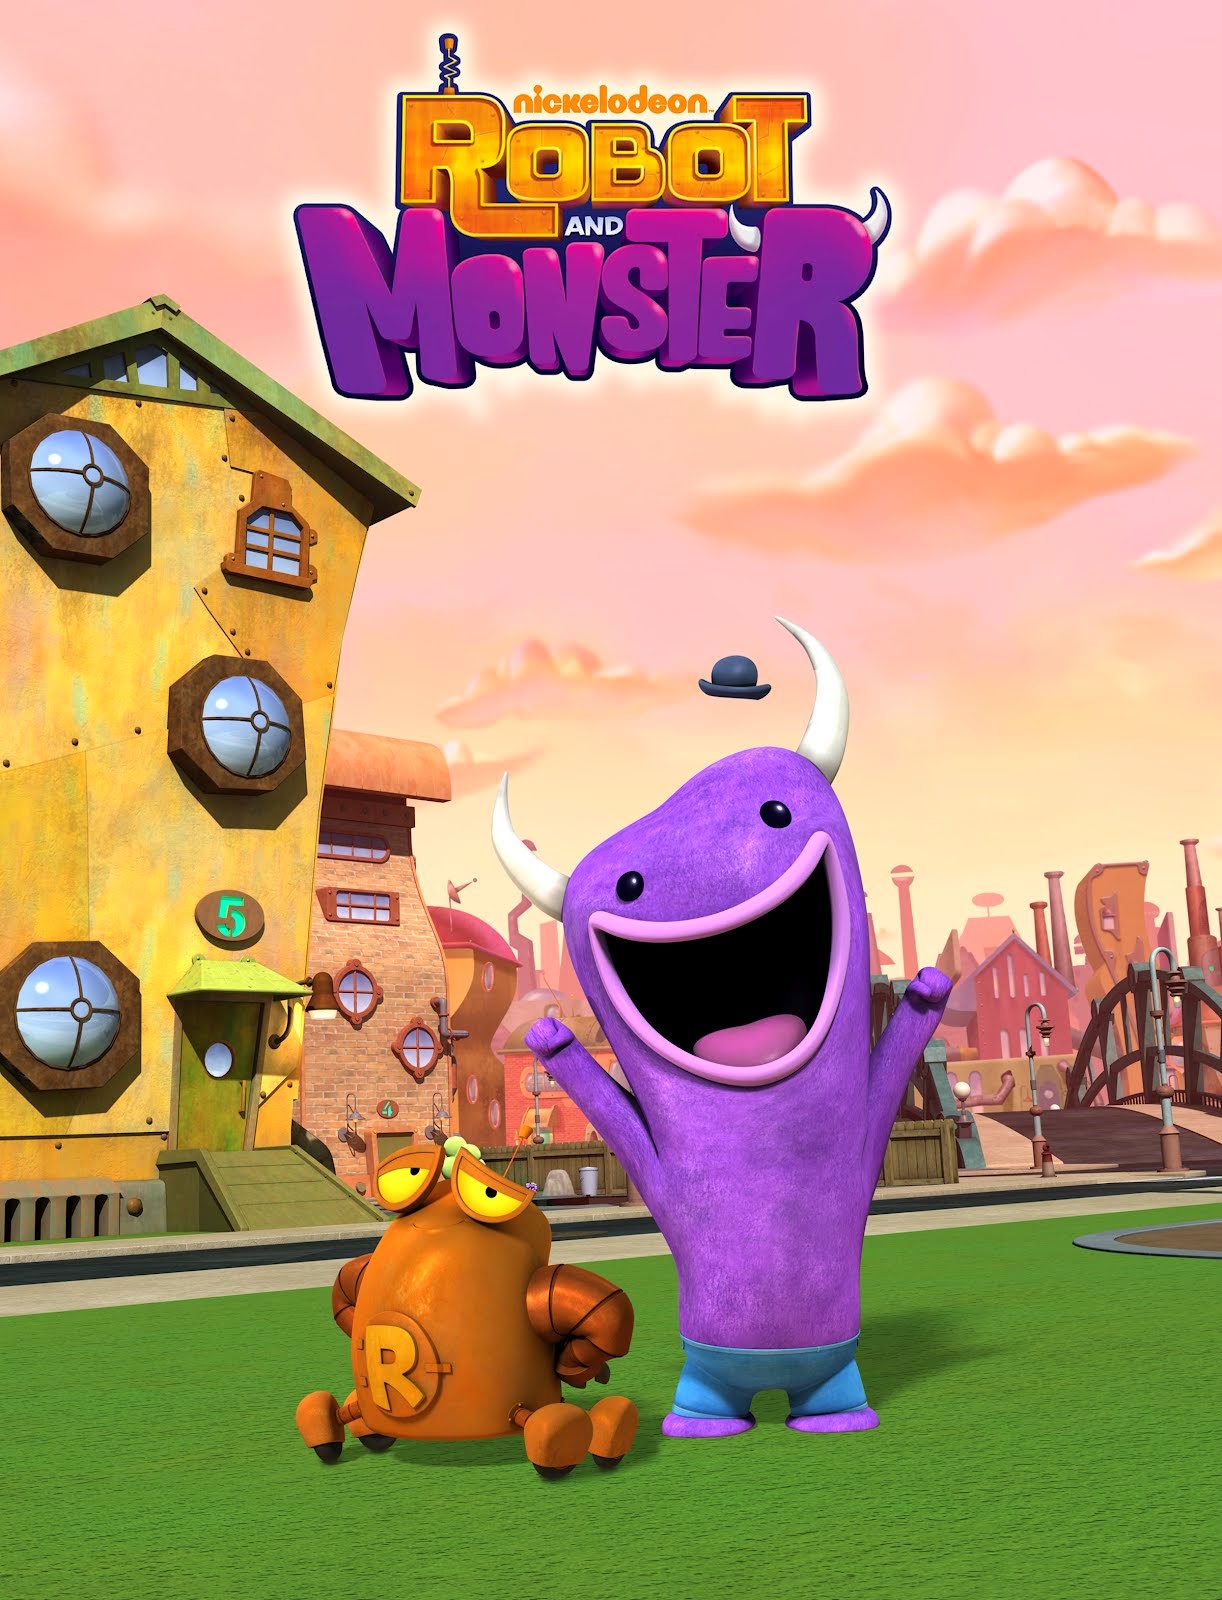 Nel 2012 furono prodotte tre nuove serie animate "Robot and Monster" fu realizzato in puter grafica vedeva le avventure di un mostro che vive in un